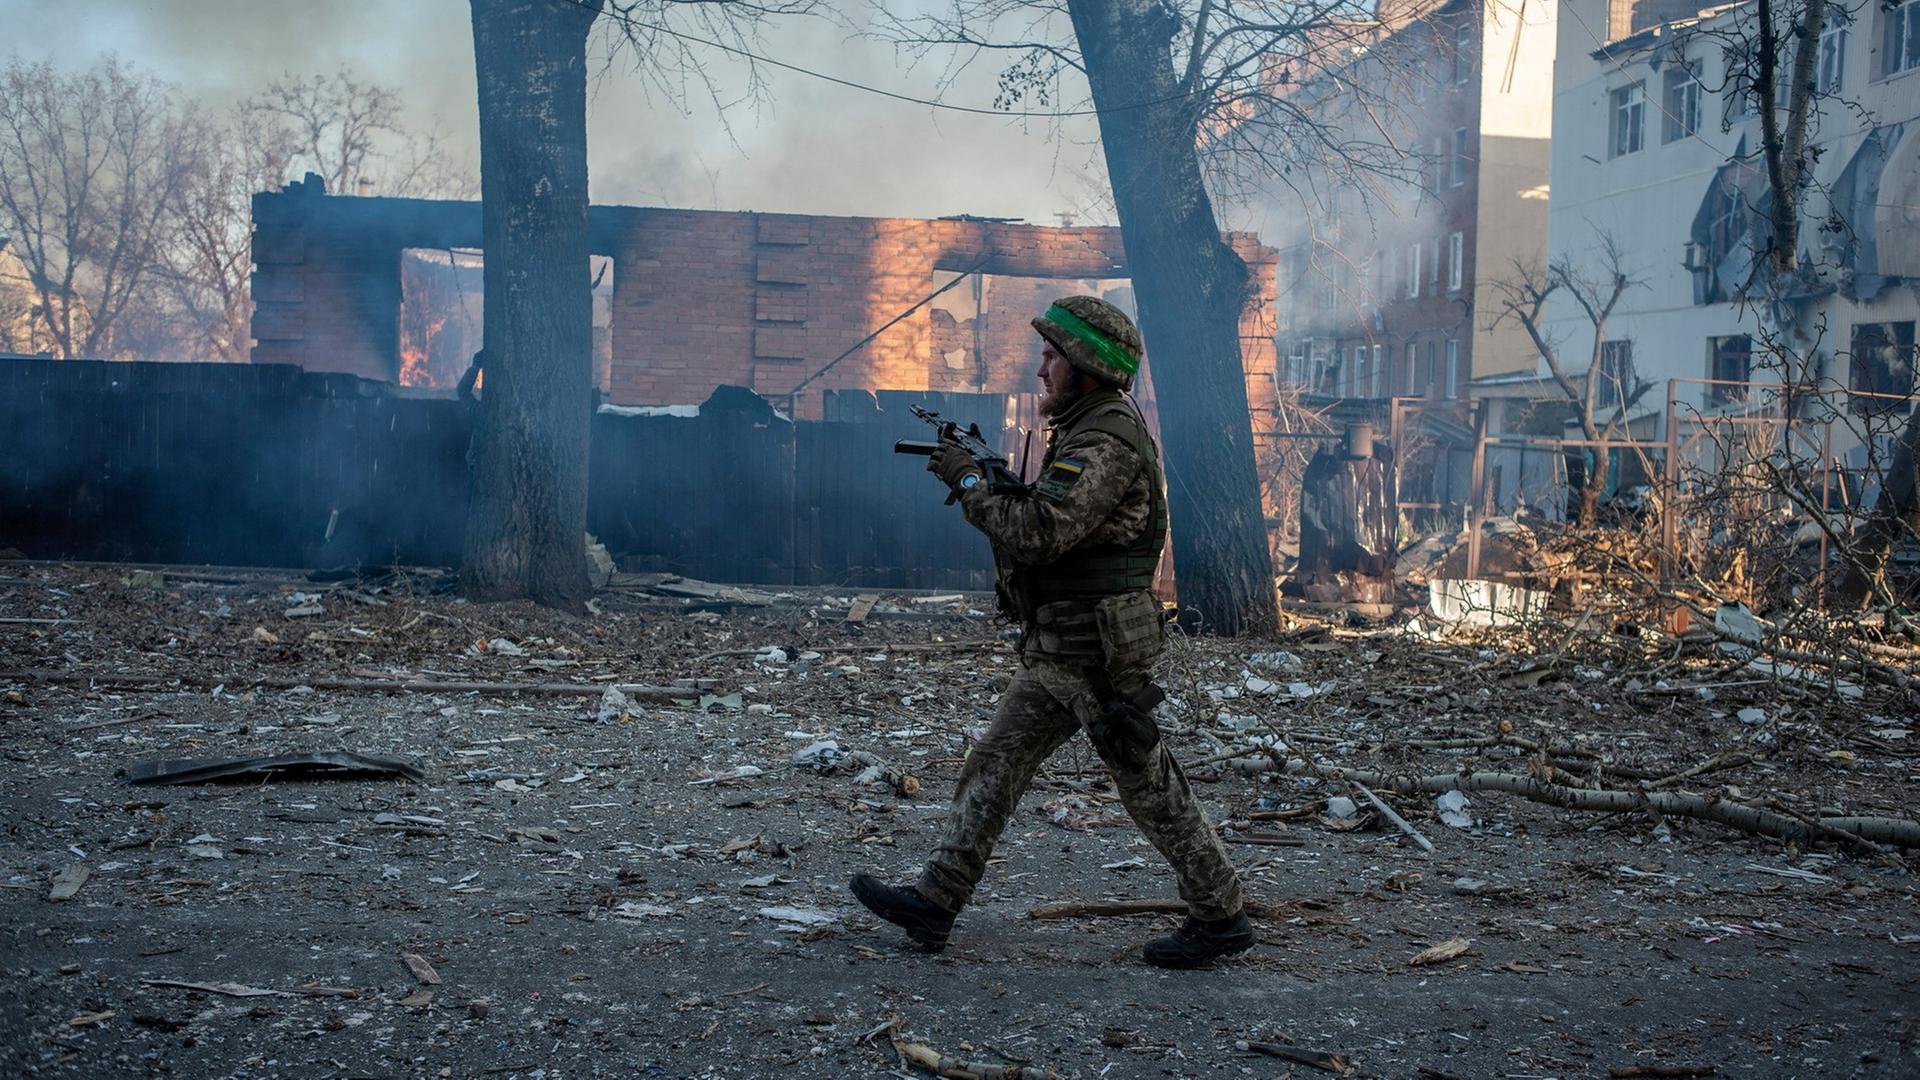 Ein ukrainischer Soldat läuft über zerstörte Straße. Hinter ihm zertrümmerte, verbrannte Häuser. 